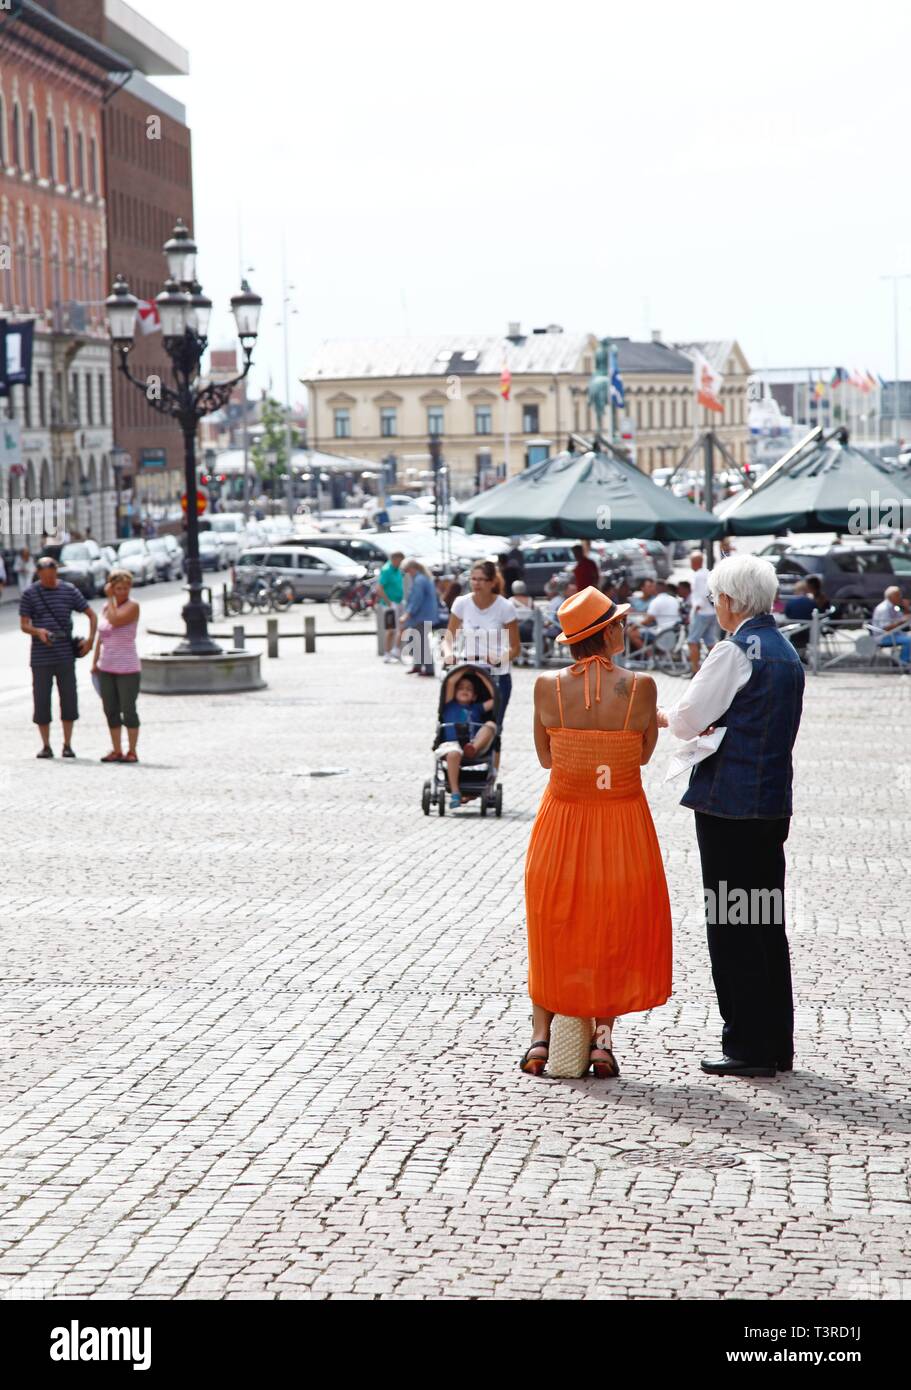 HESLINGBORG 2014-08-07 la vita di strada nella città di Helsingborg. Foto Jeppe Gustafsson Foto Stock